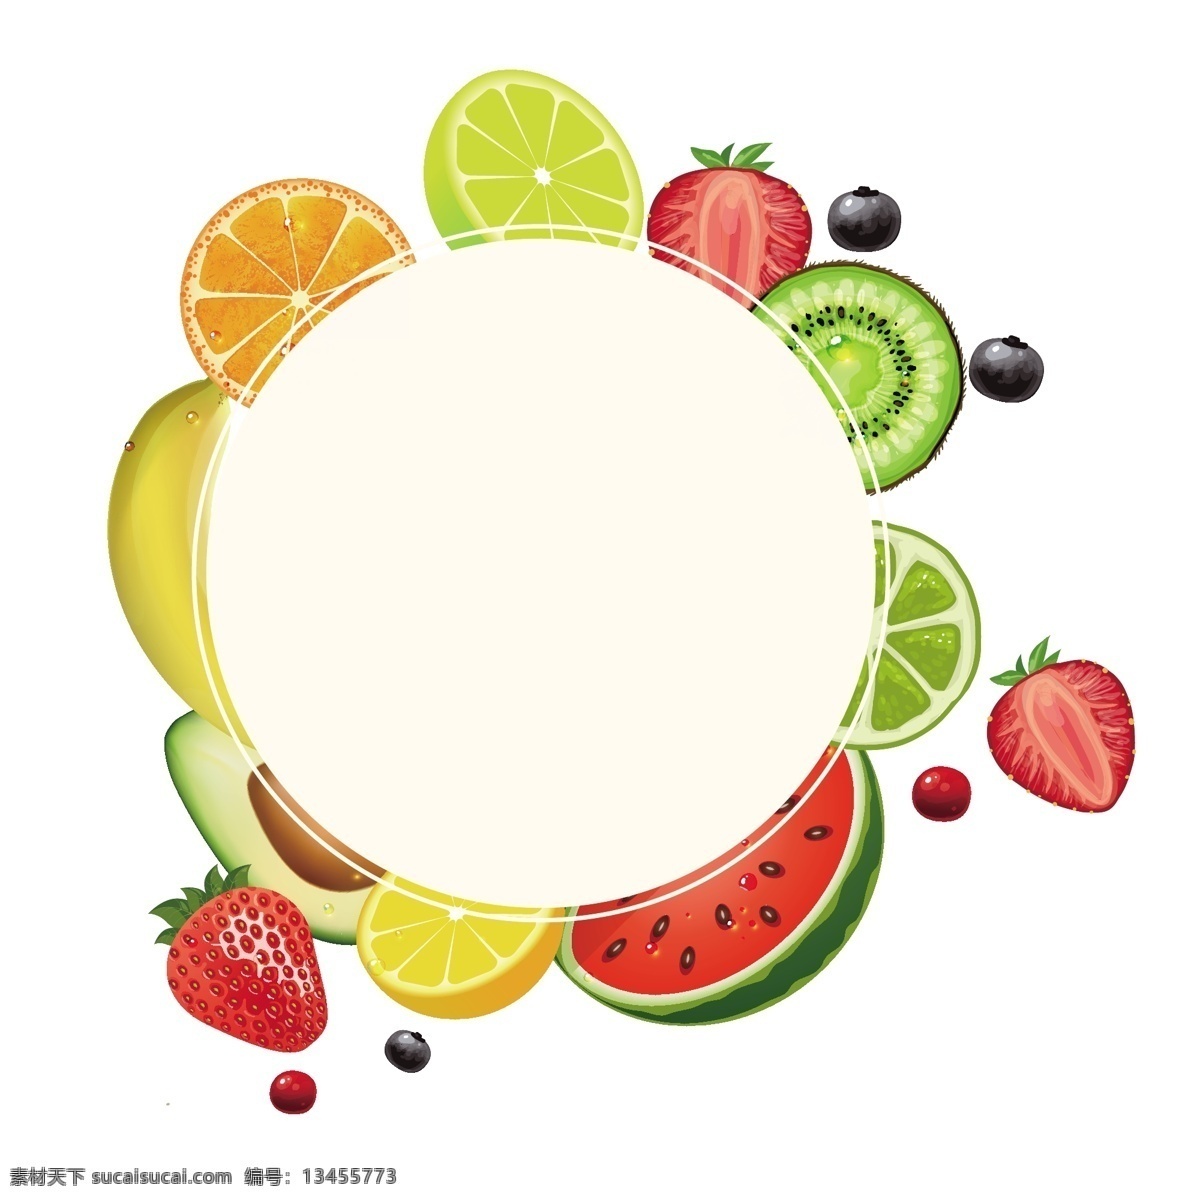 矢量 卡通 扁平化 水果 边框 矢量水果边框 卡通水果边框 水果边框 西瓜 草莓 橙子 香蕉 猕猴桃边框